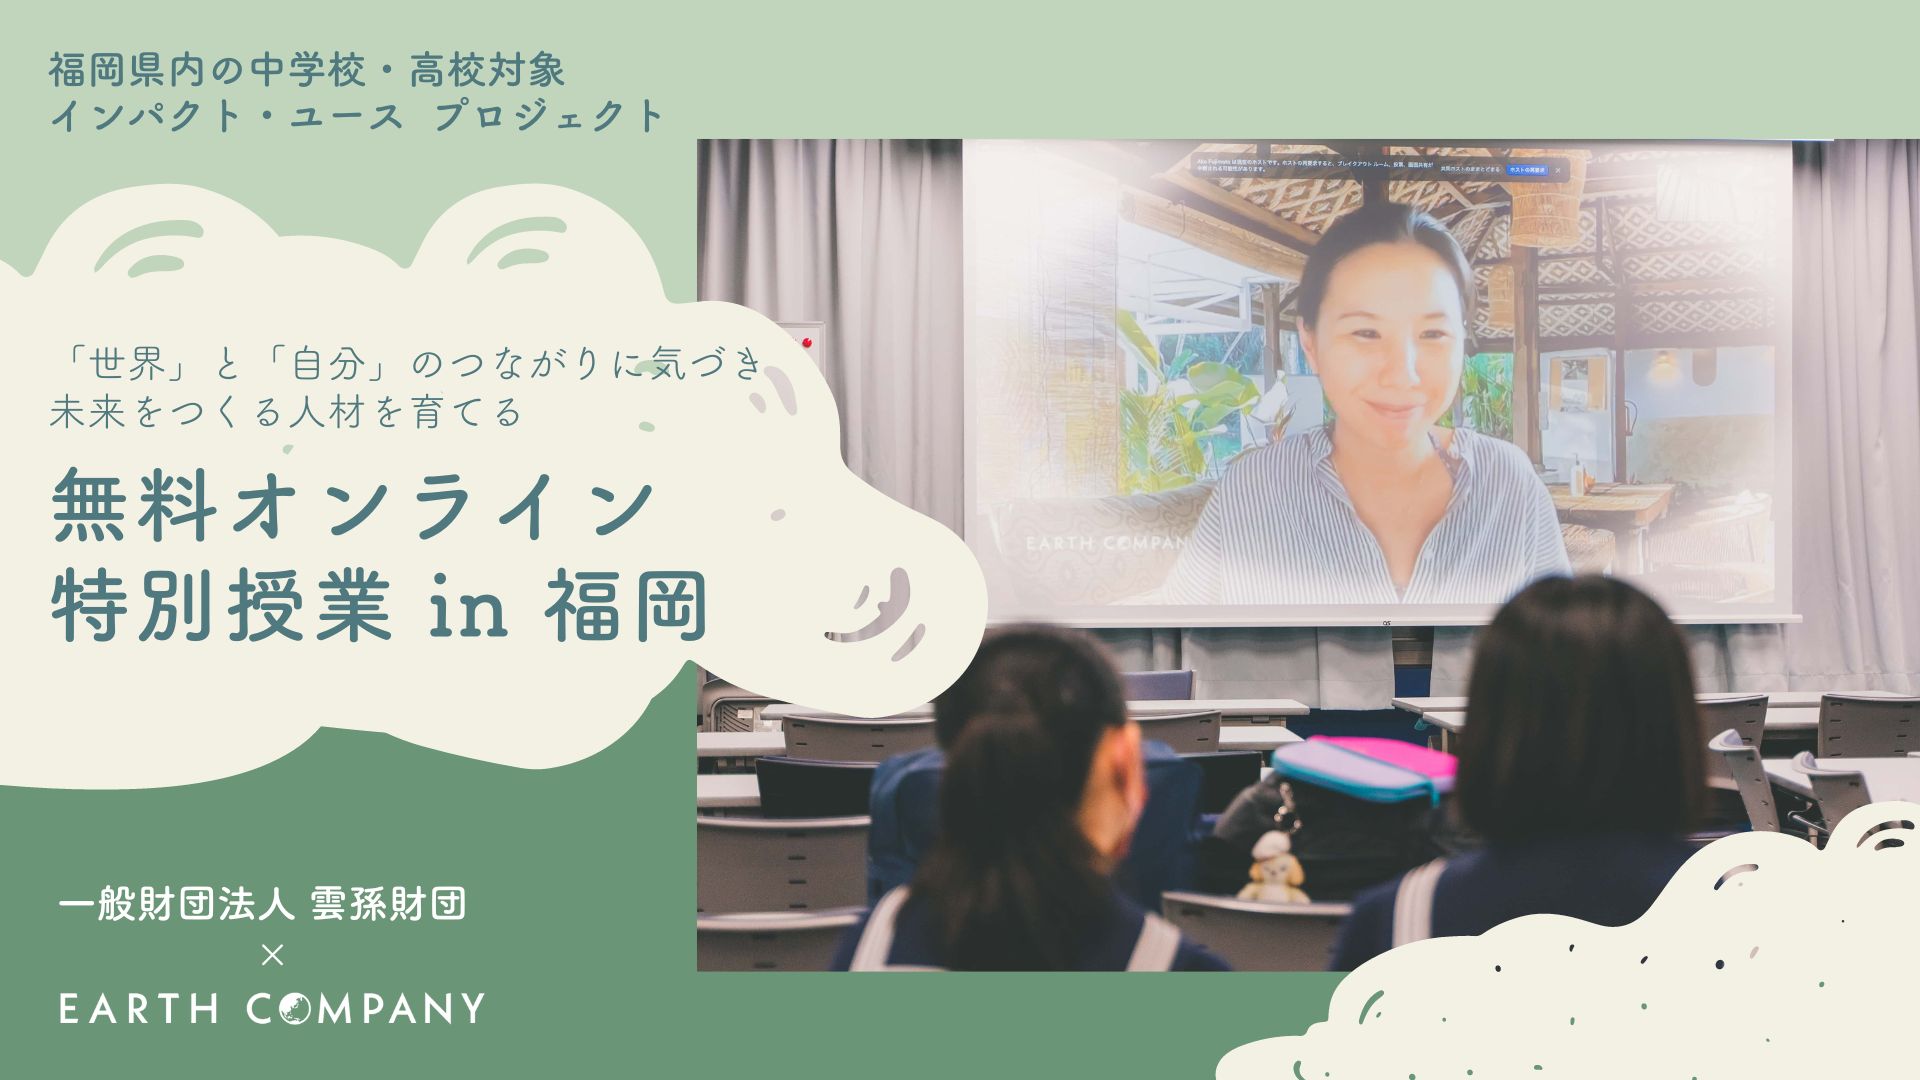 「世界」と「自分」のつながりに気づきグローバルな視点を持って活躍する地域人材を育成。無料特別授業を福岡県で実施